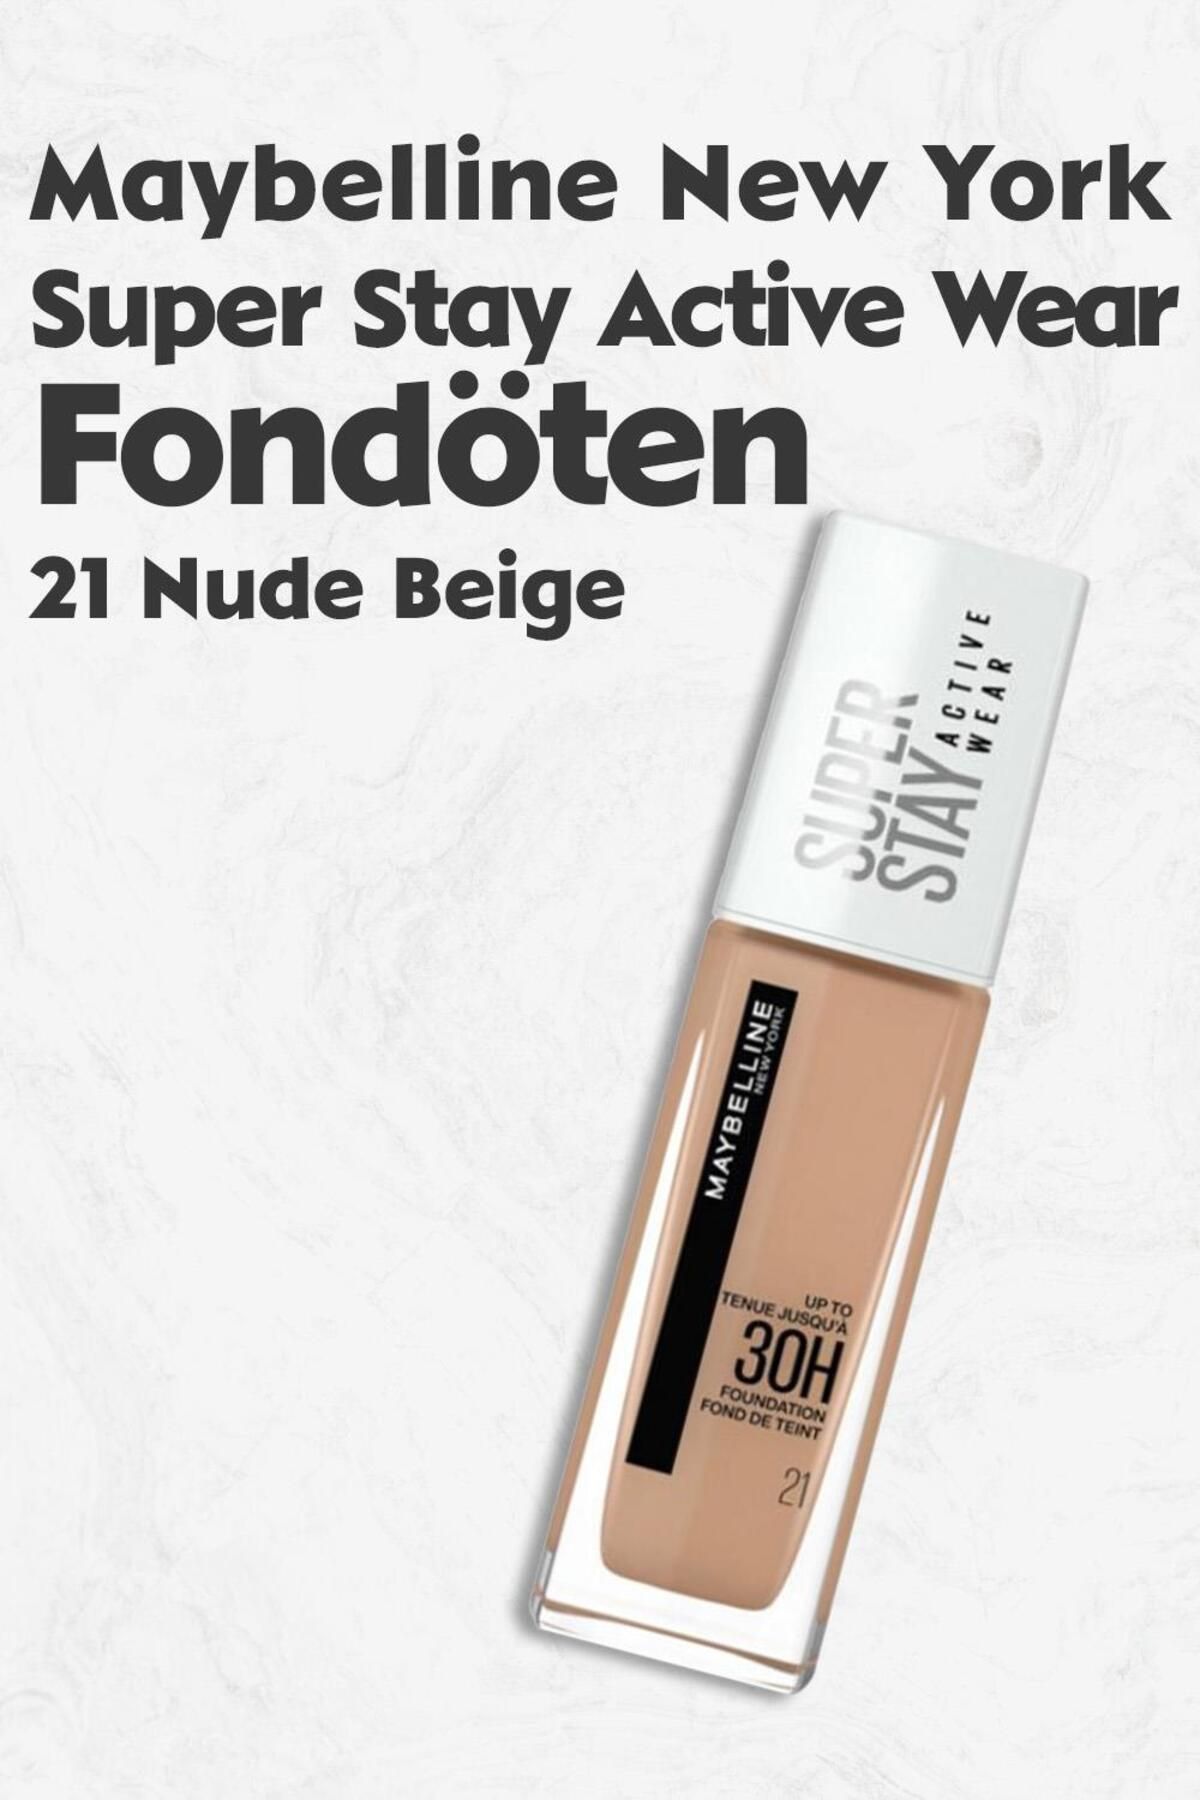 Beige York Nude Super Active 21 Yorumları Fondöten New Fiyatı, Stay Maybelline - Trendyol Wear